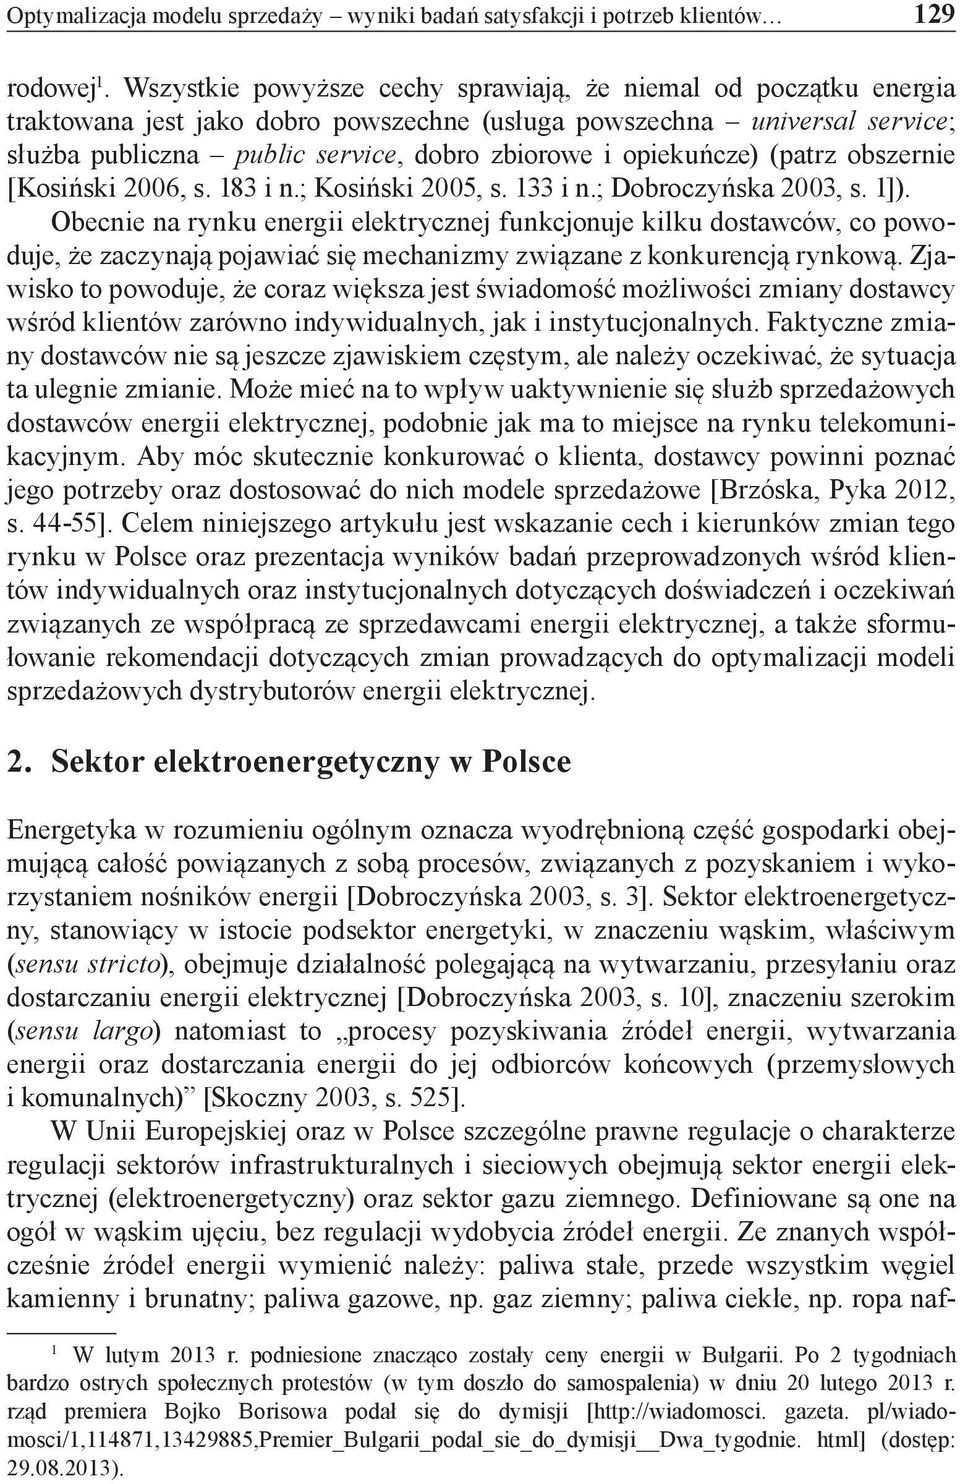 opiekuńcze) (patrz obszernie [Kosiński 2006, s. 183 i n.; Kosiński 2005, s. 133 i n.; Dobroczyńska 2003, s. 1]).